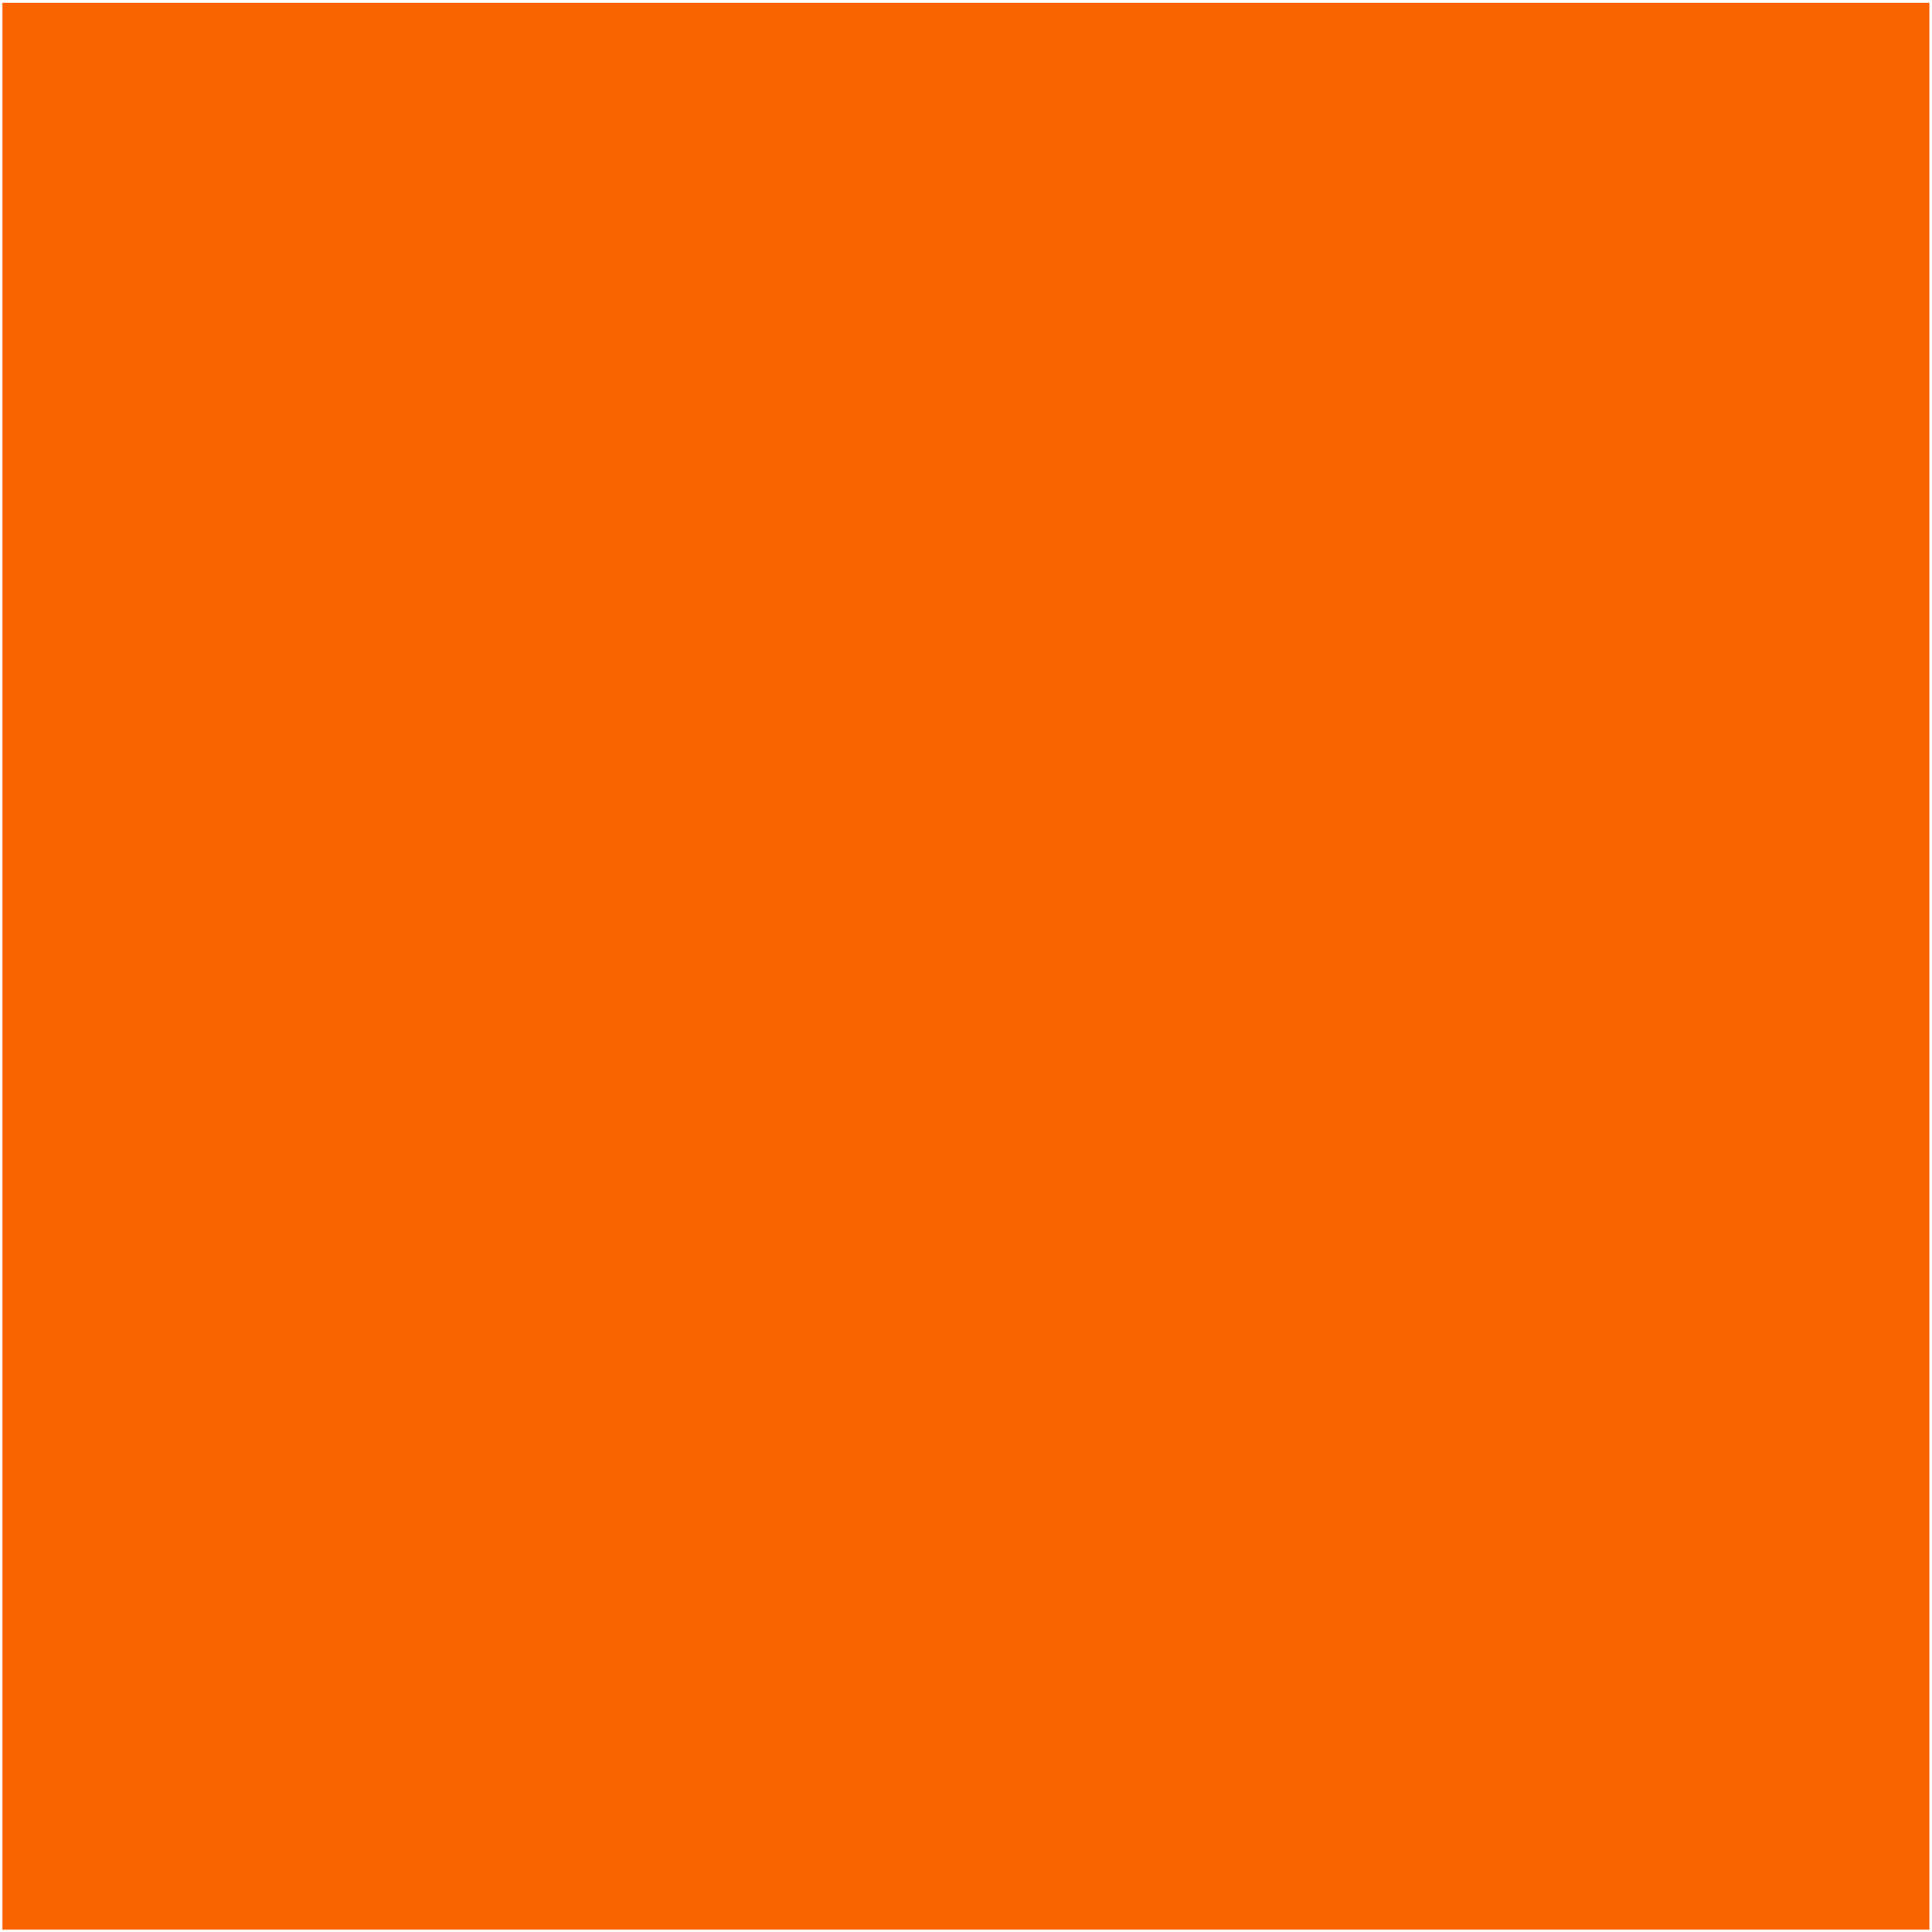 orange color block, hex code fe5c00